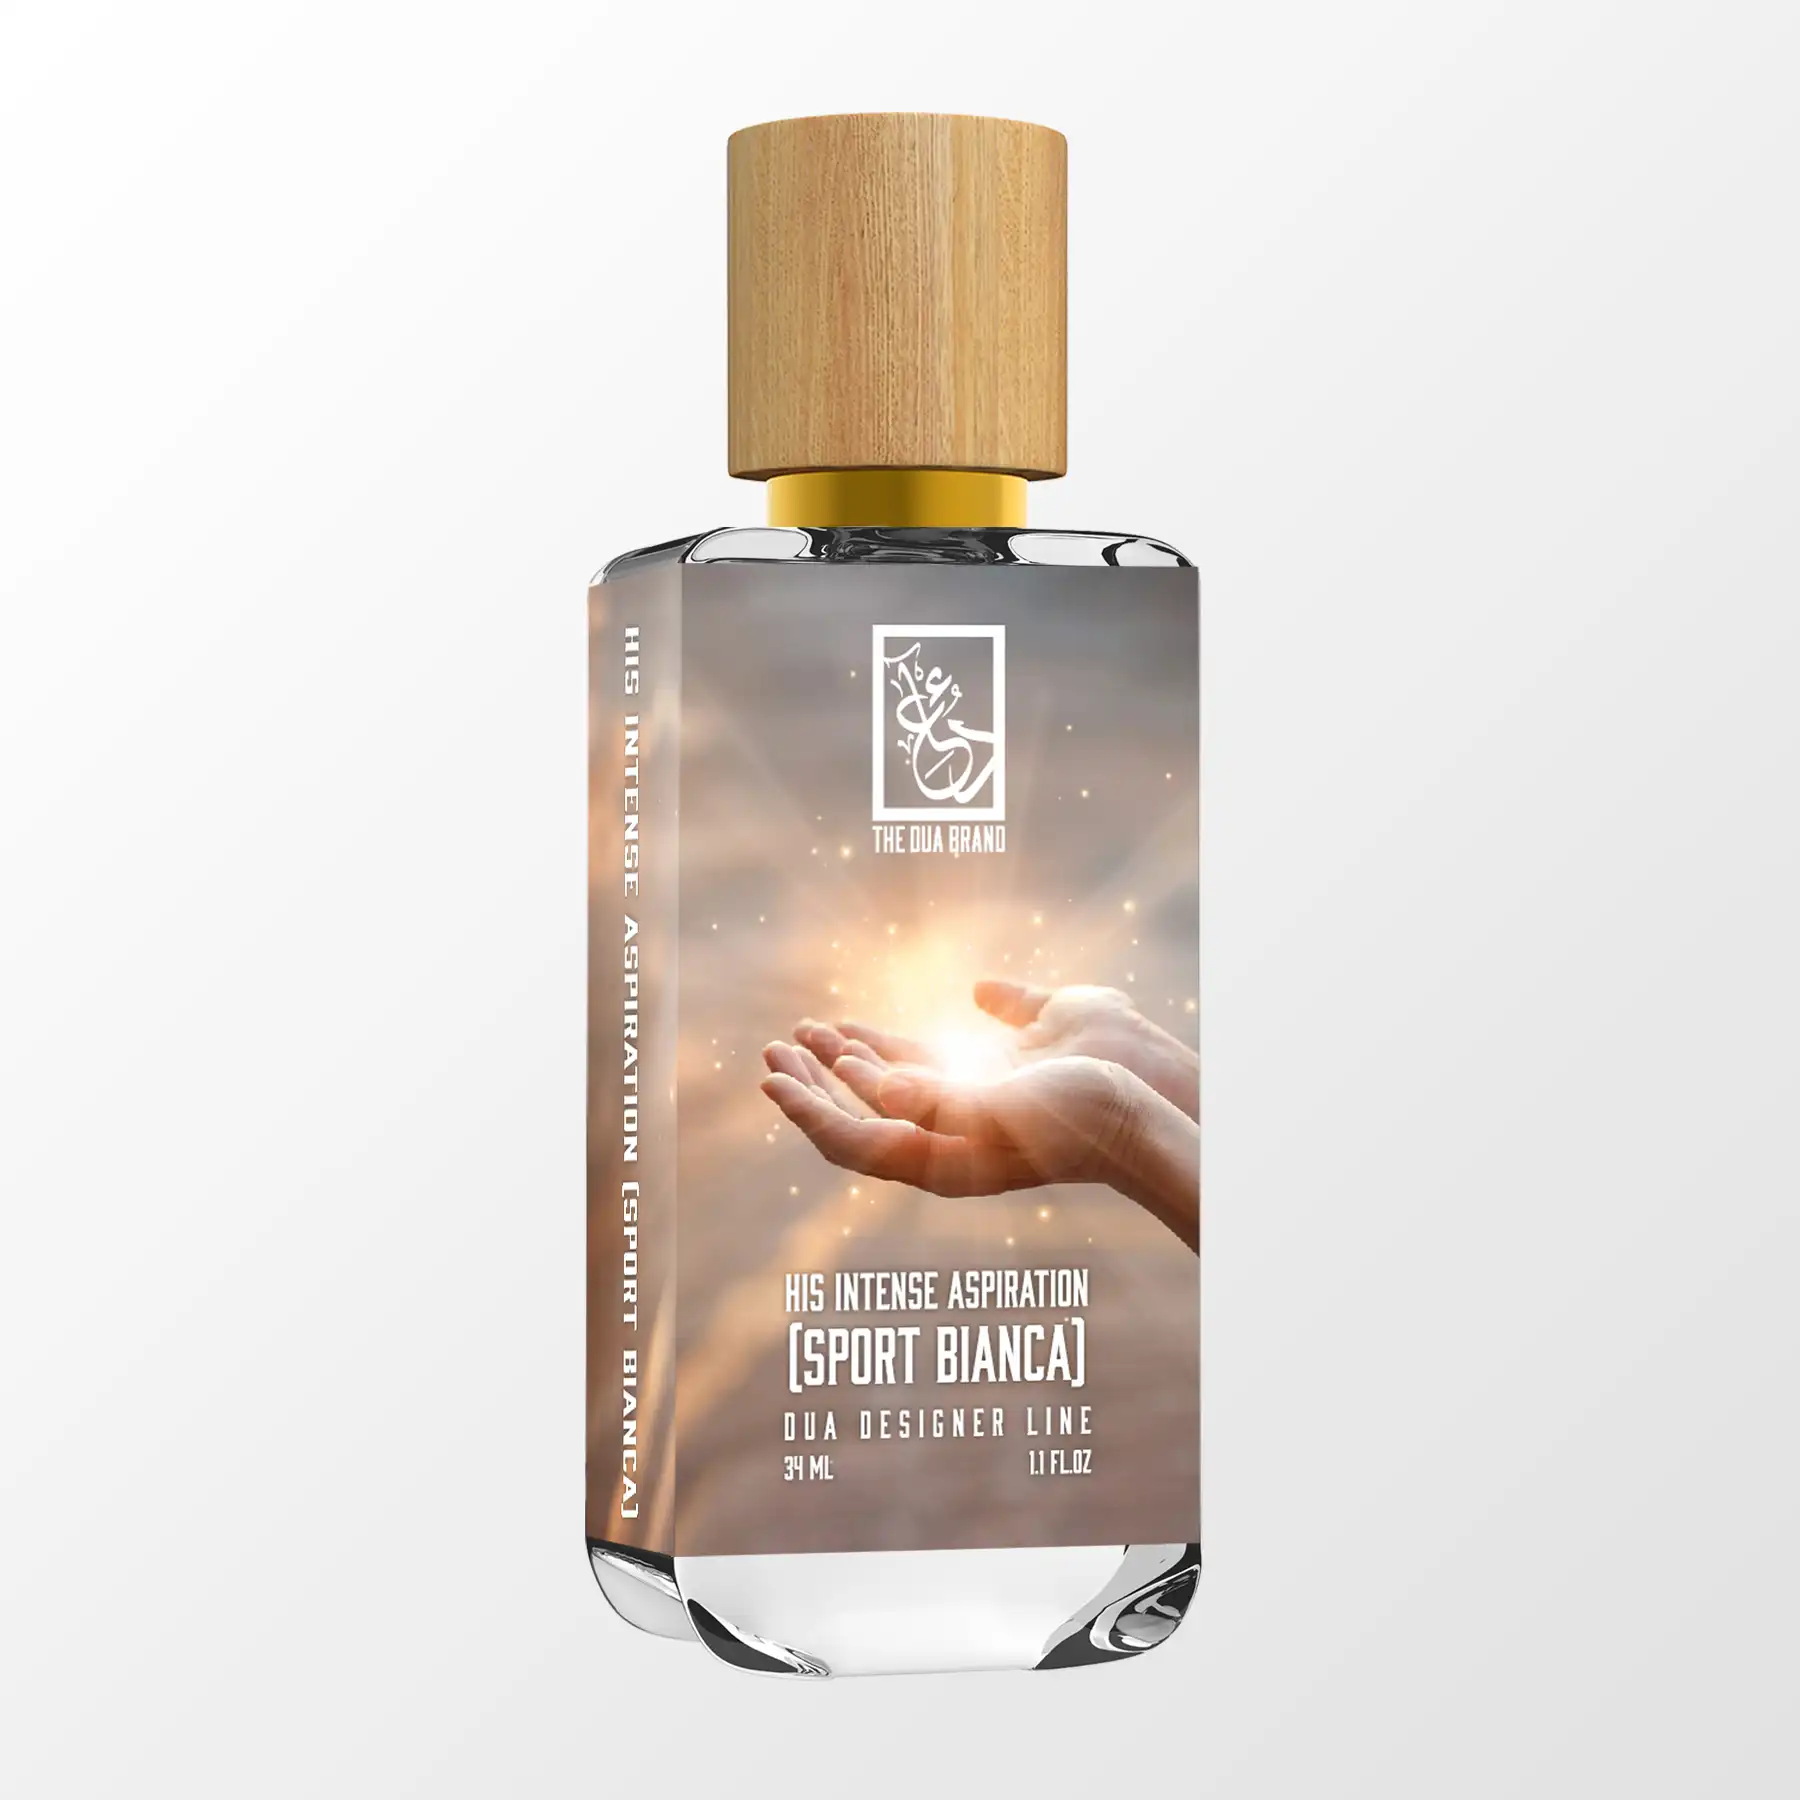 His Intense Aspiration (Sport Bianca) - DUA FRAGRANCES - Citrus Aromatic -  Masculine Perfume - 34ml/1.1 FL OZ - Extrait De Parfum